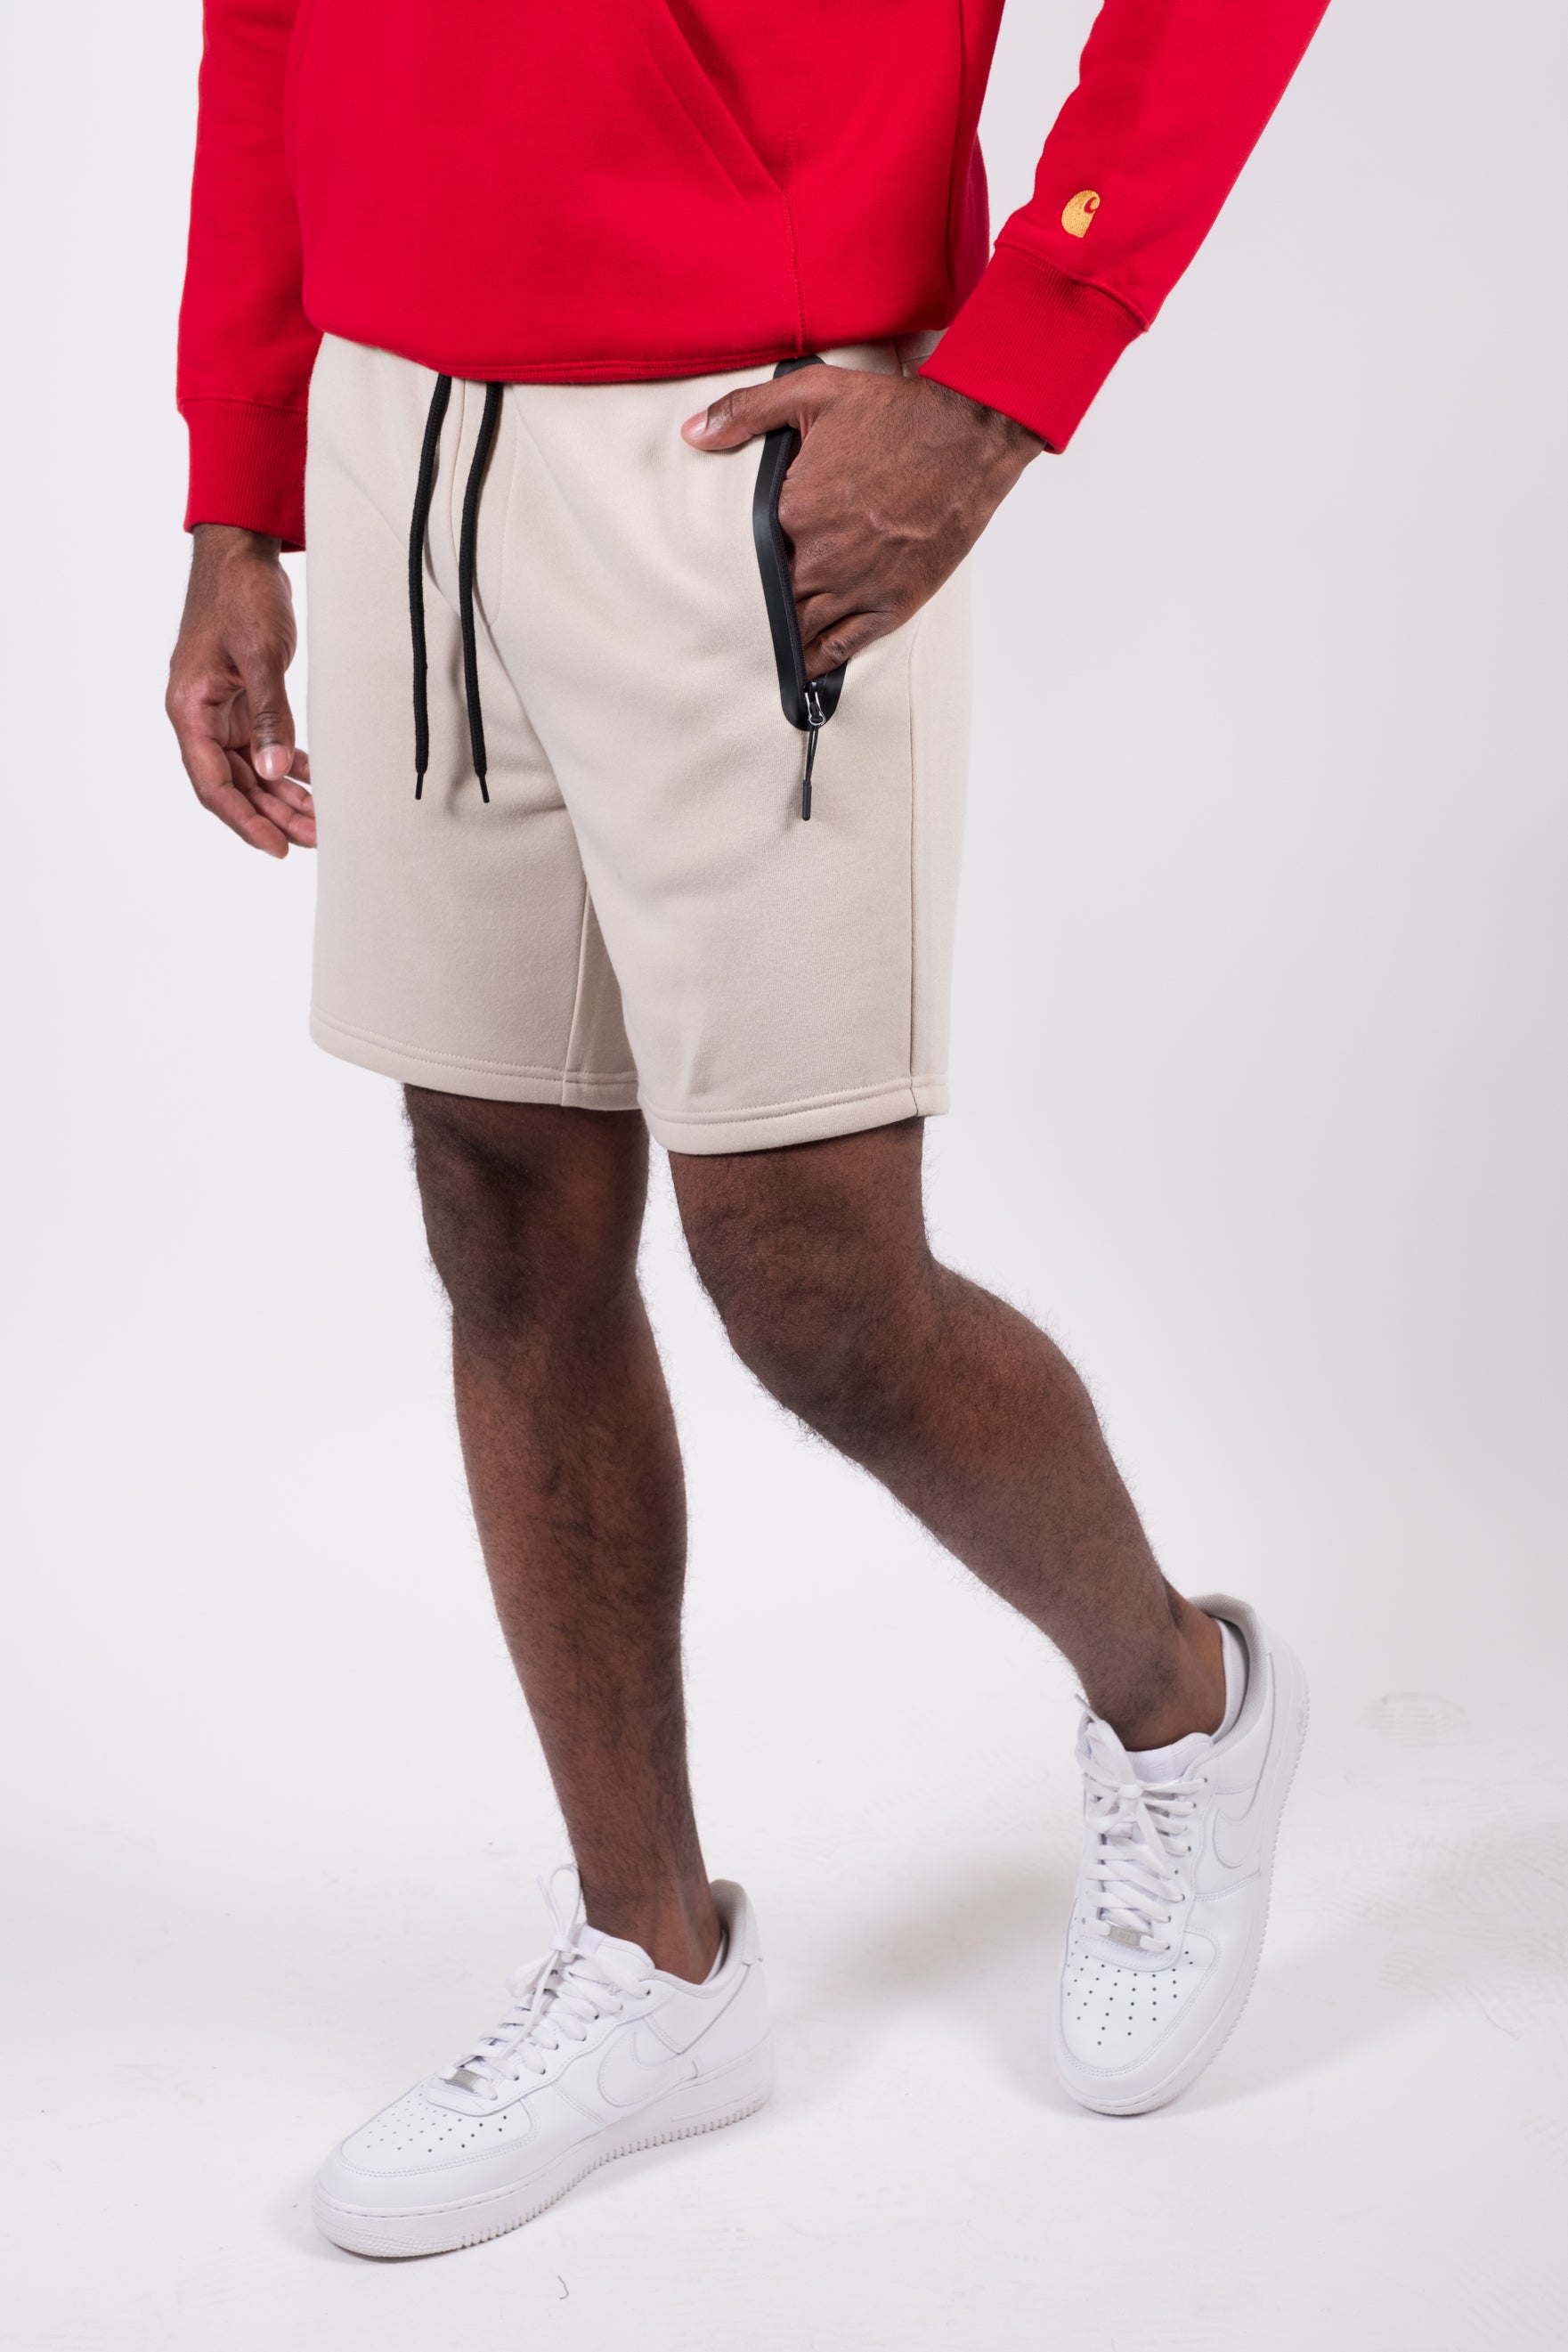 Heat Seal Zip Short | Men's Shorts | Brooklyn Cloth